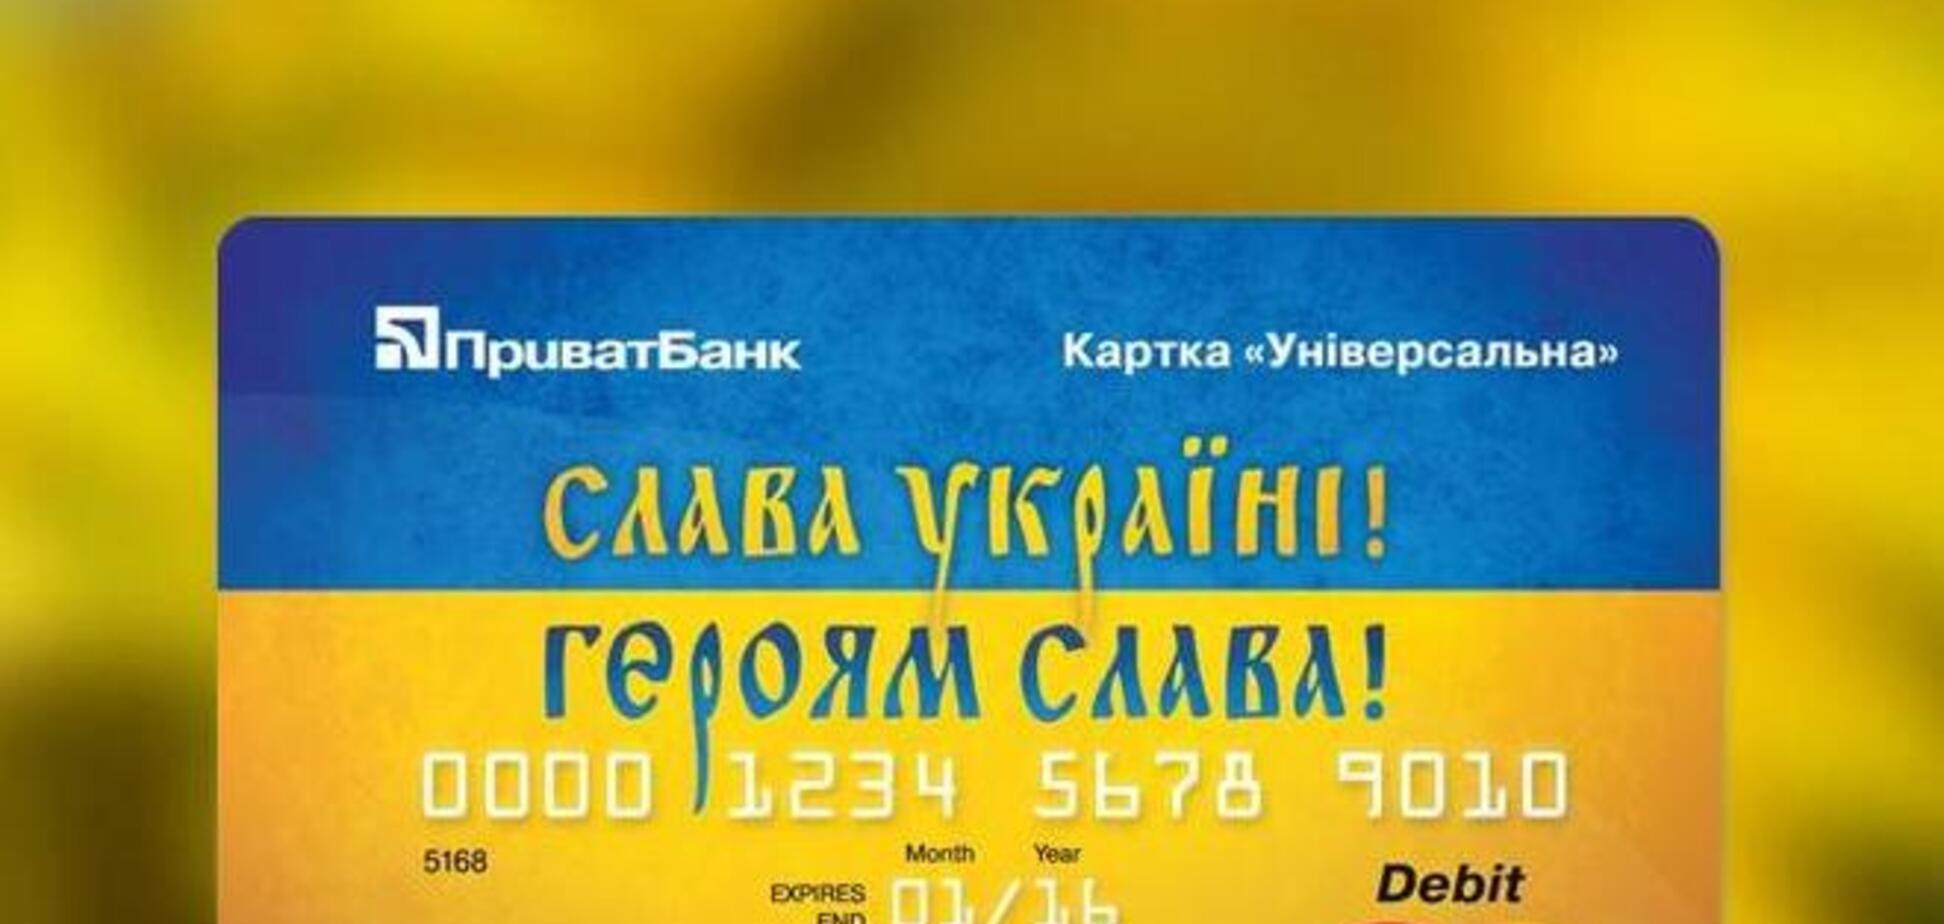 ПриватБанк выпустил новые бесплатные карты 'Слава Украине!'